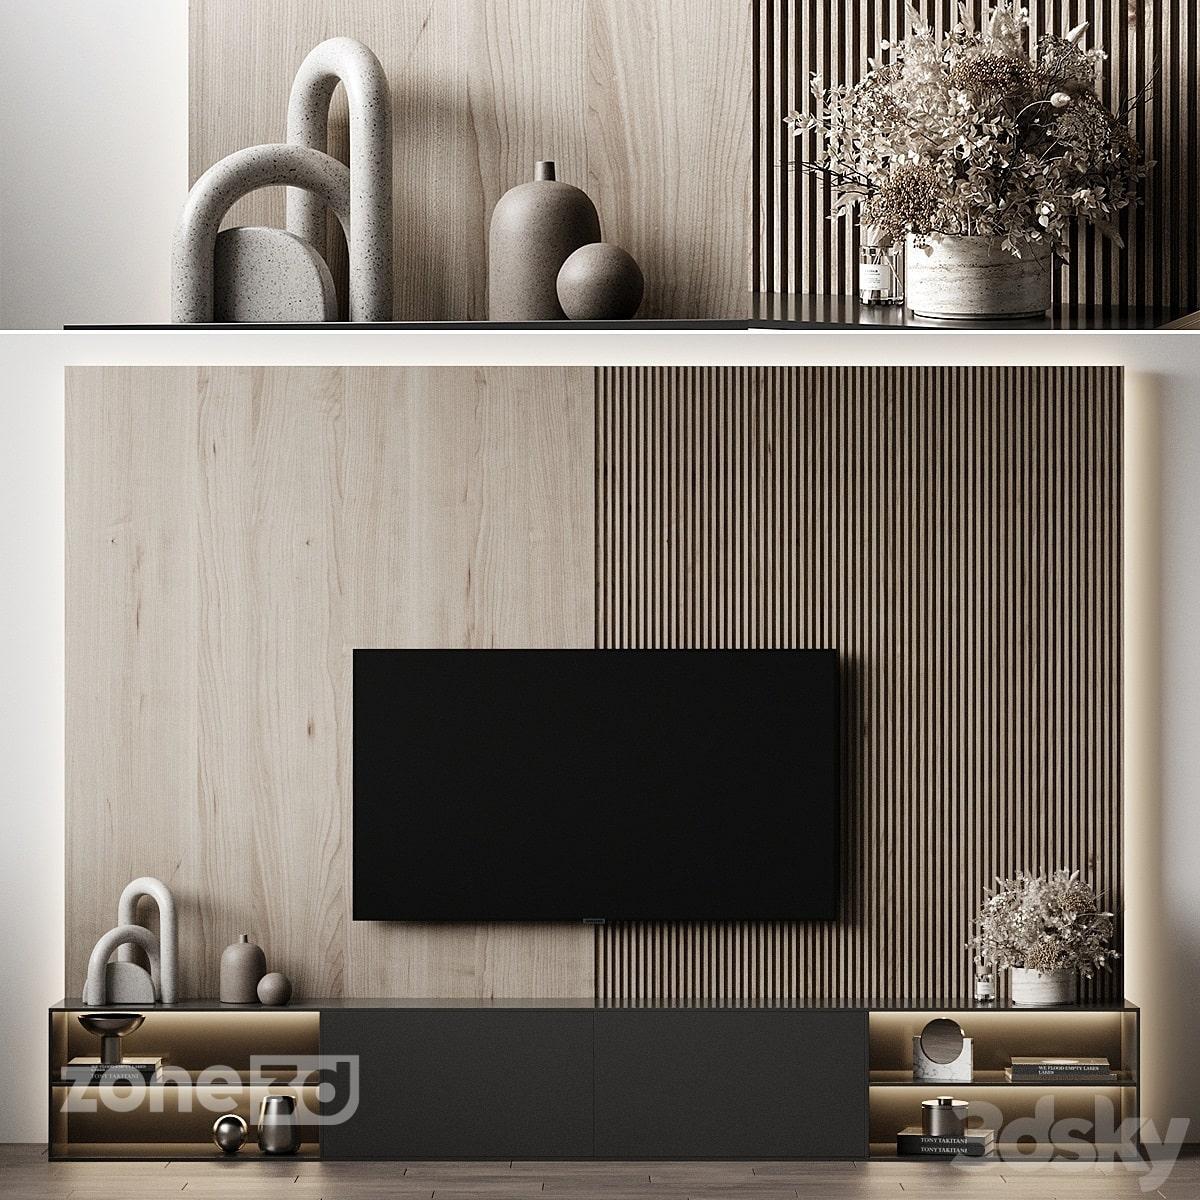 آبجکت ست میز تلوزیون با لوازم دکوری سنگی و فلزی با دیوار پشتی چوبی